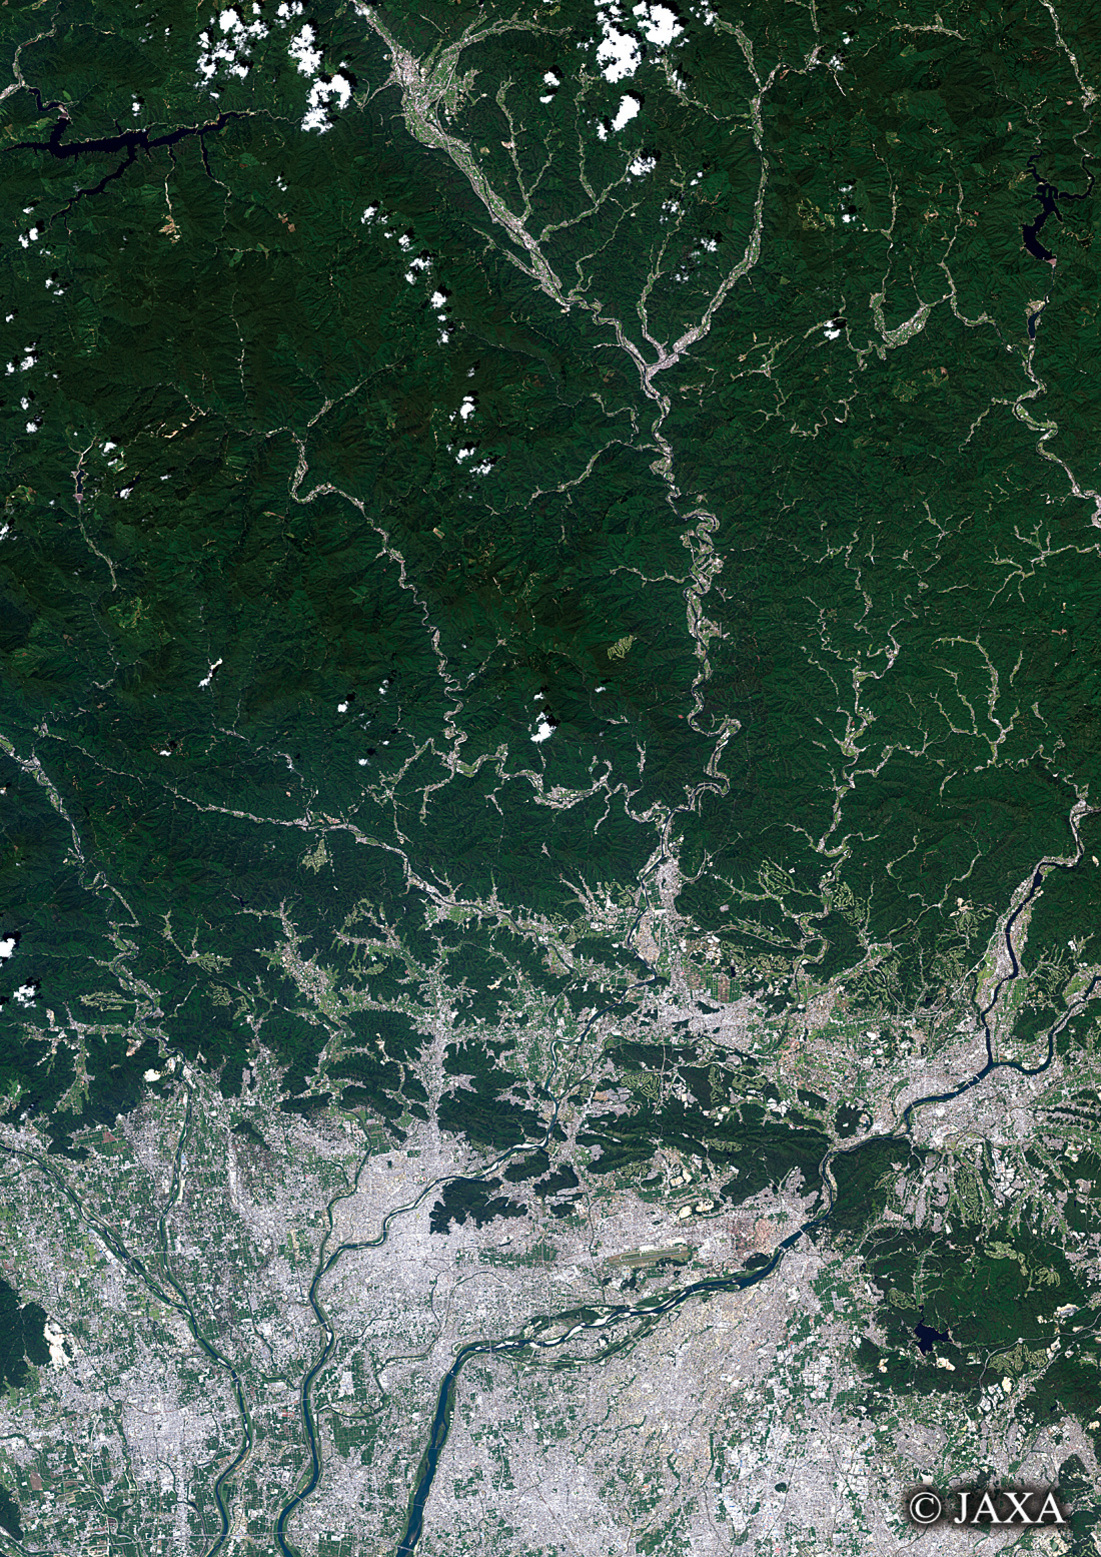 だいちから見た日本の都市 岐阜県:衛星画像